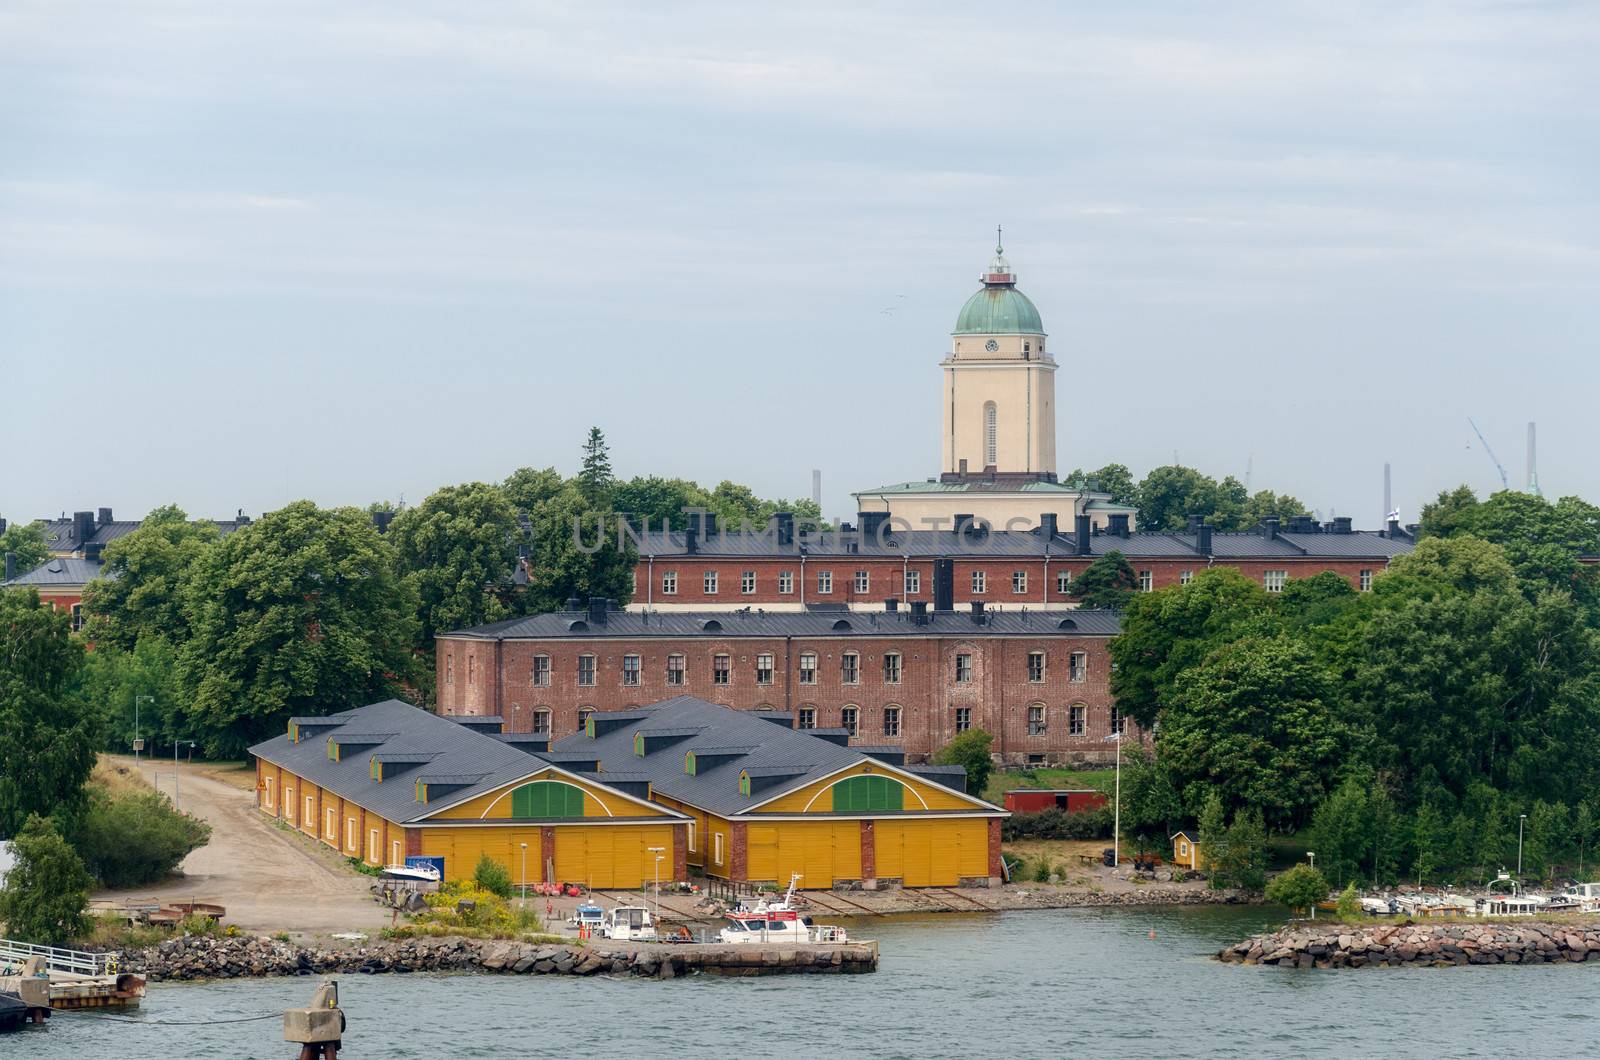 Fortress of Suomenlinna Island near Helsinki. Finland.